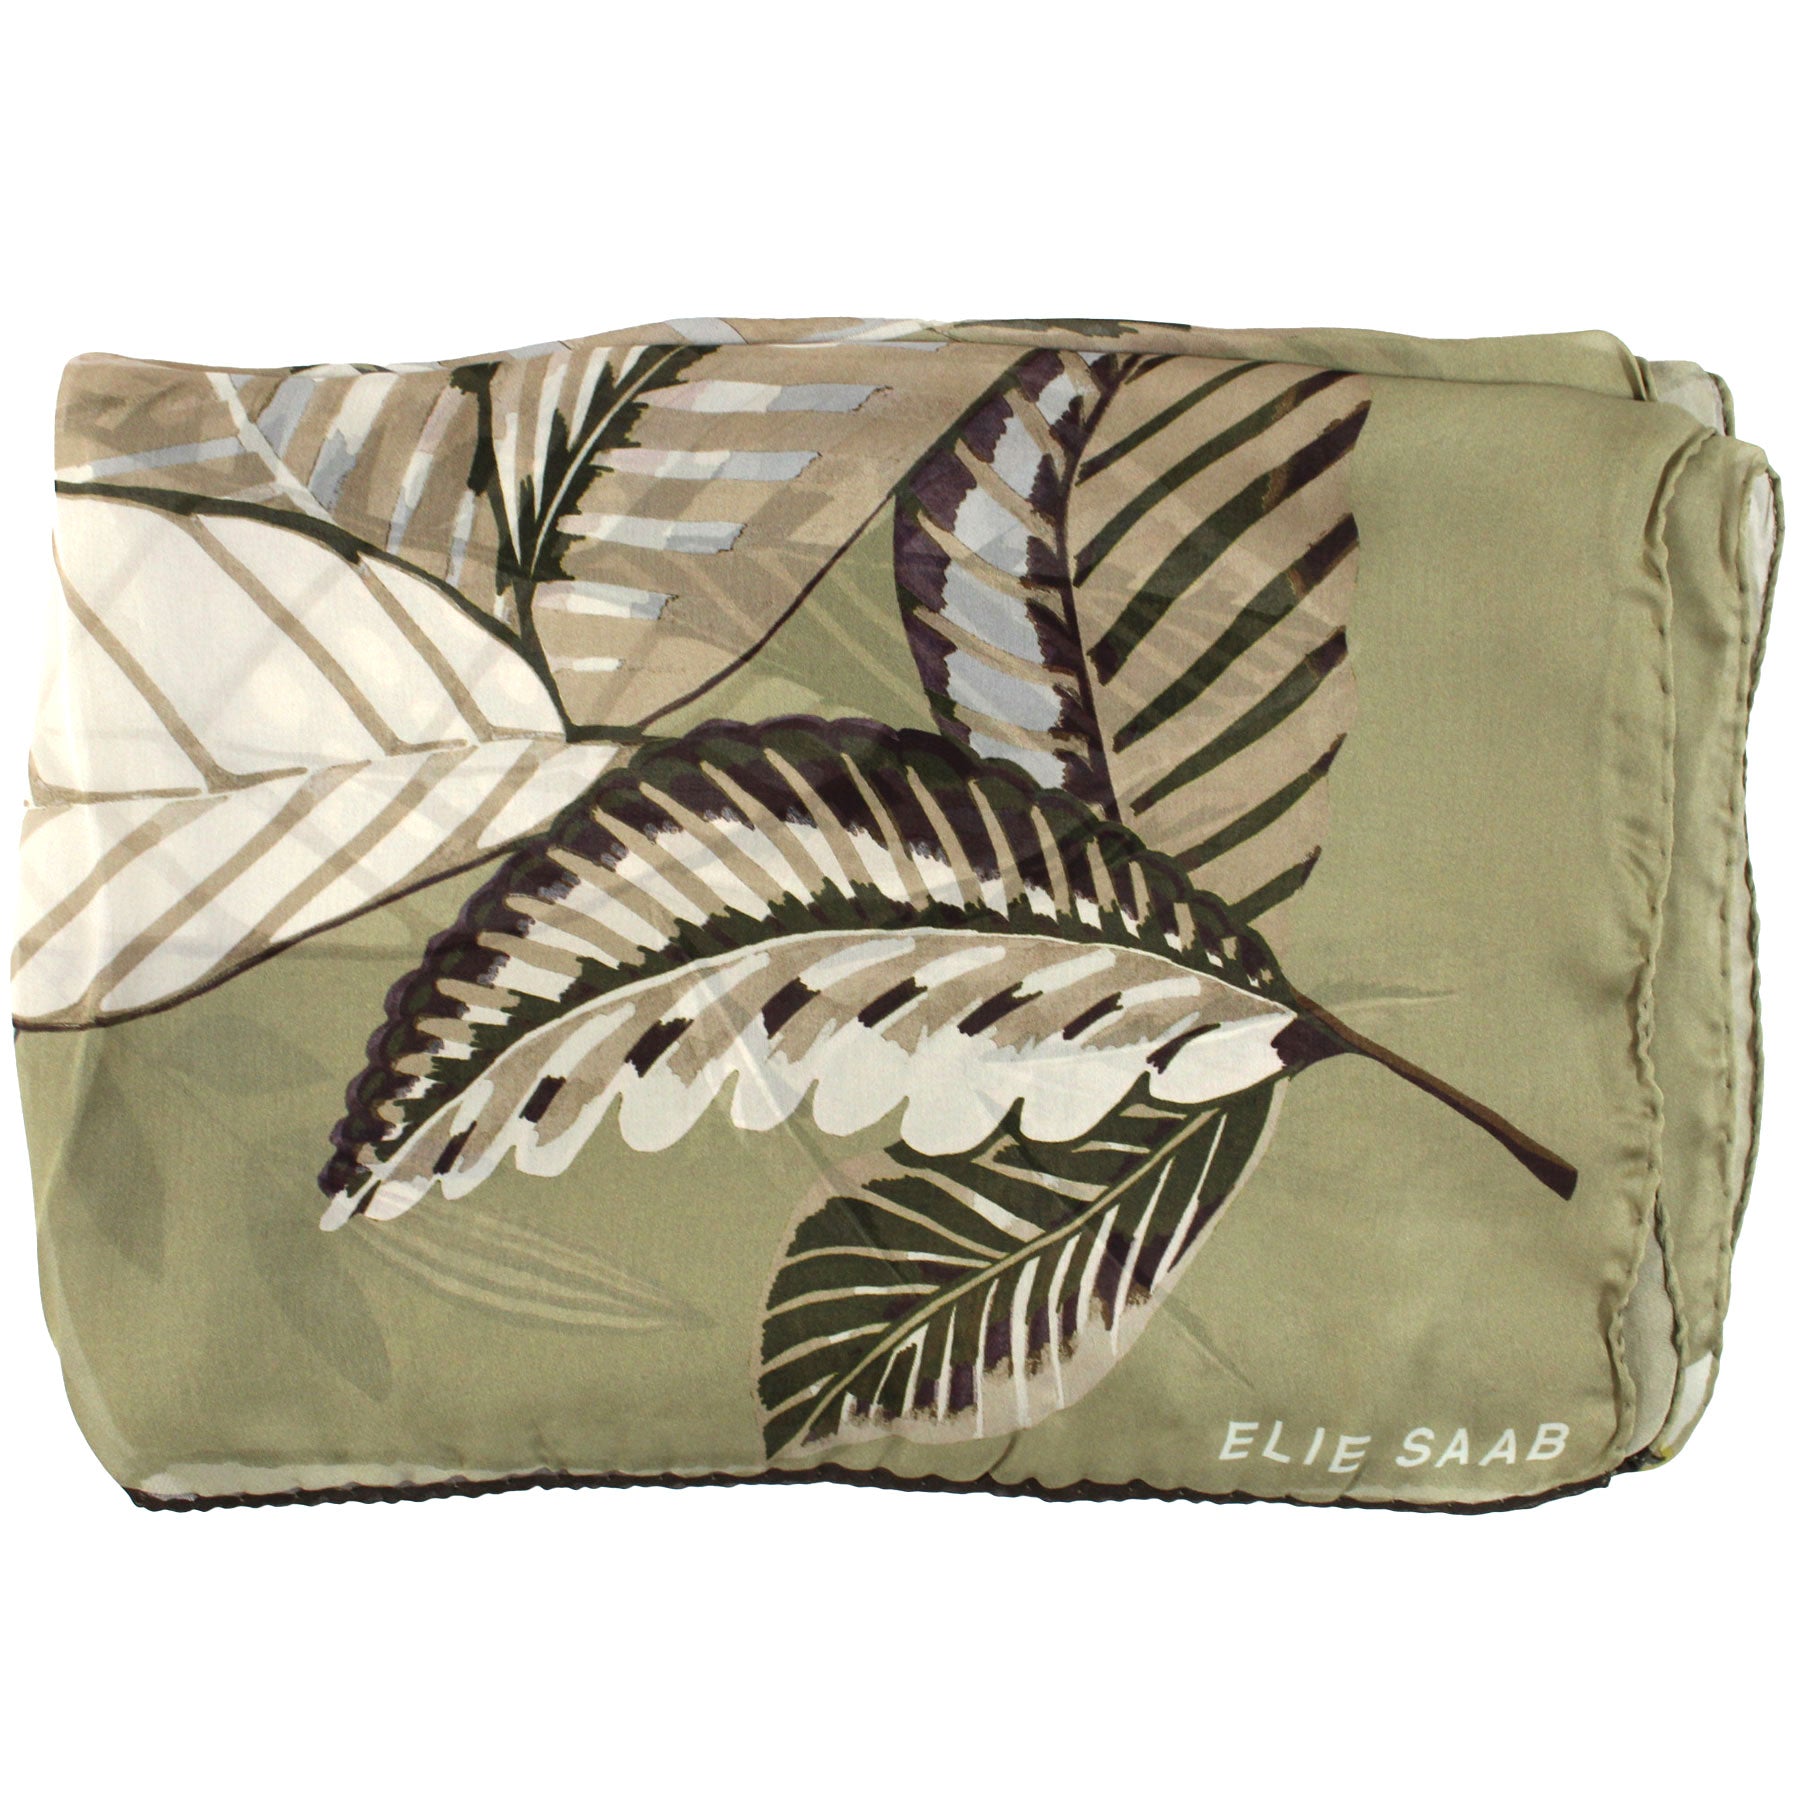 Elie Saab Scarf Olive Beige Leaves Design - Chiffon Silk Shawl